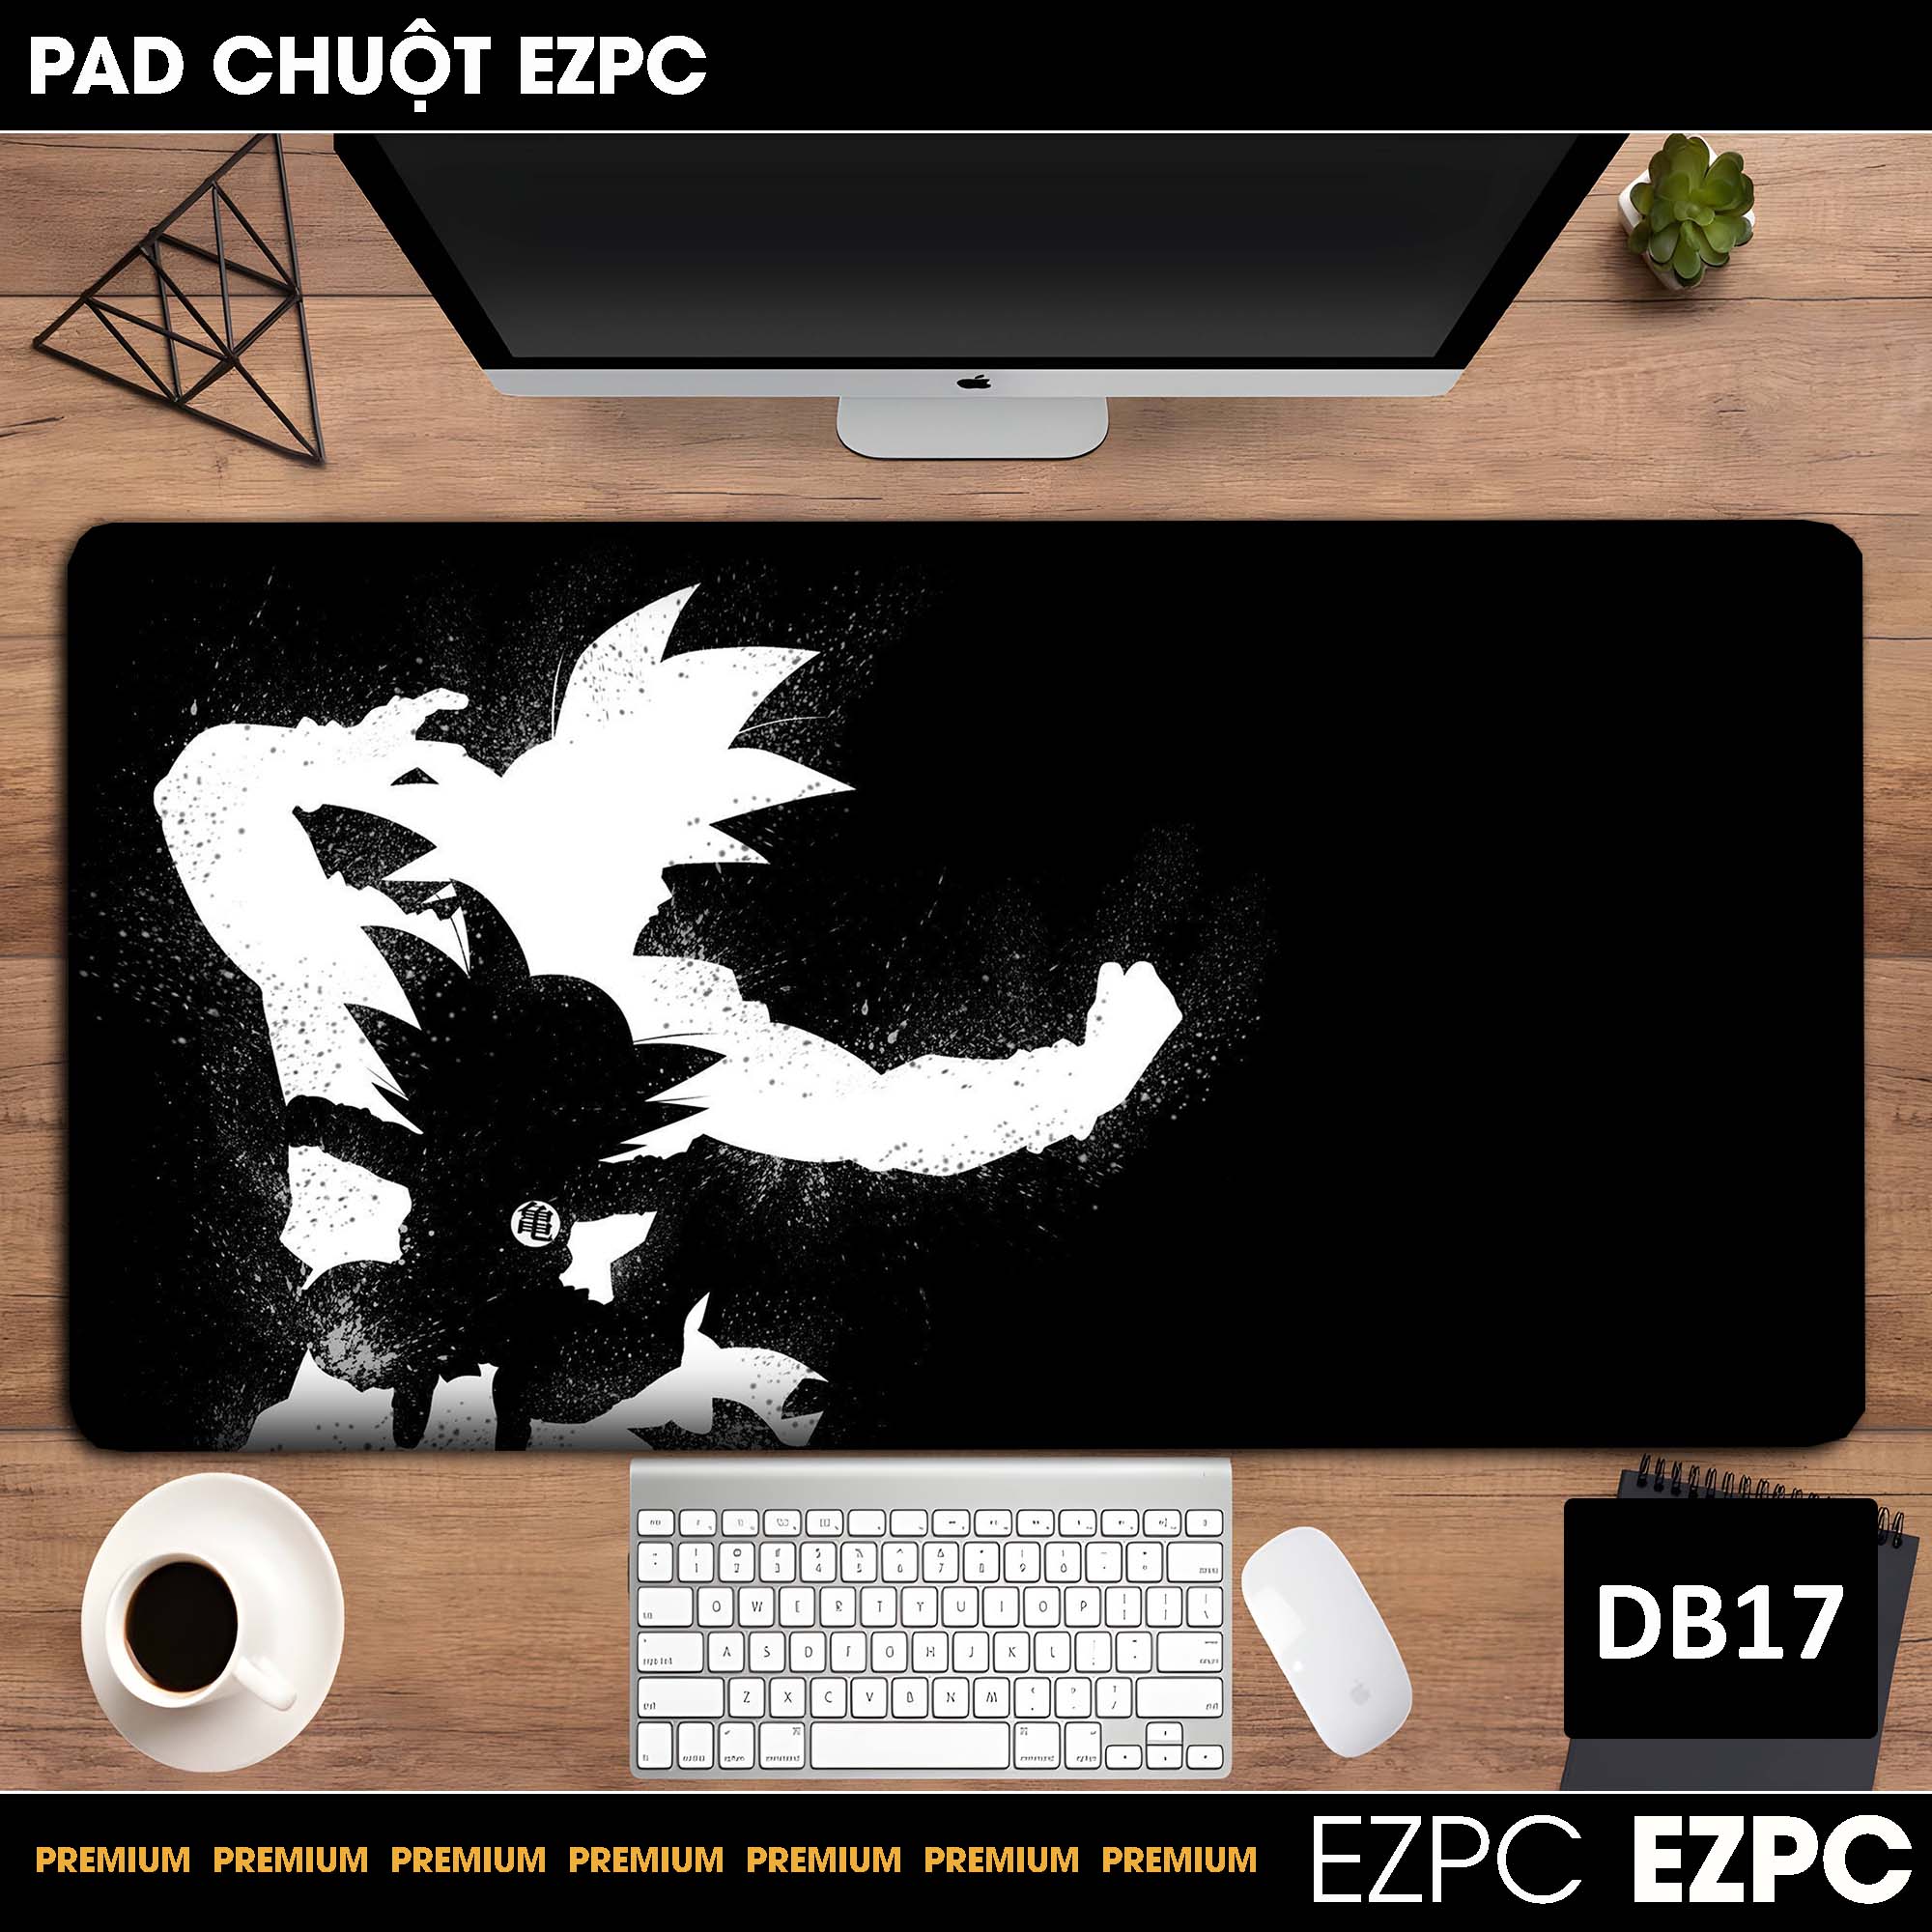 Miếng Lót Chuột, Pad Chuột Cỡ Lớn DB17 | EZPC